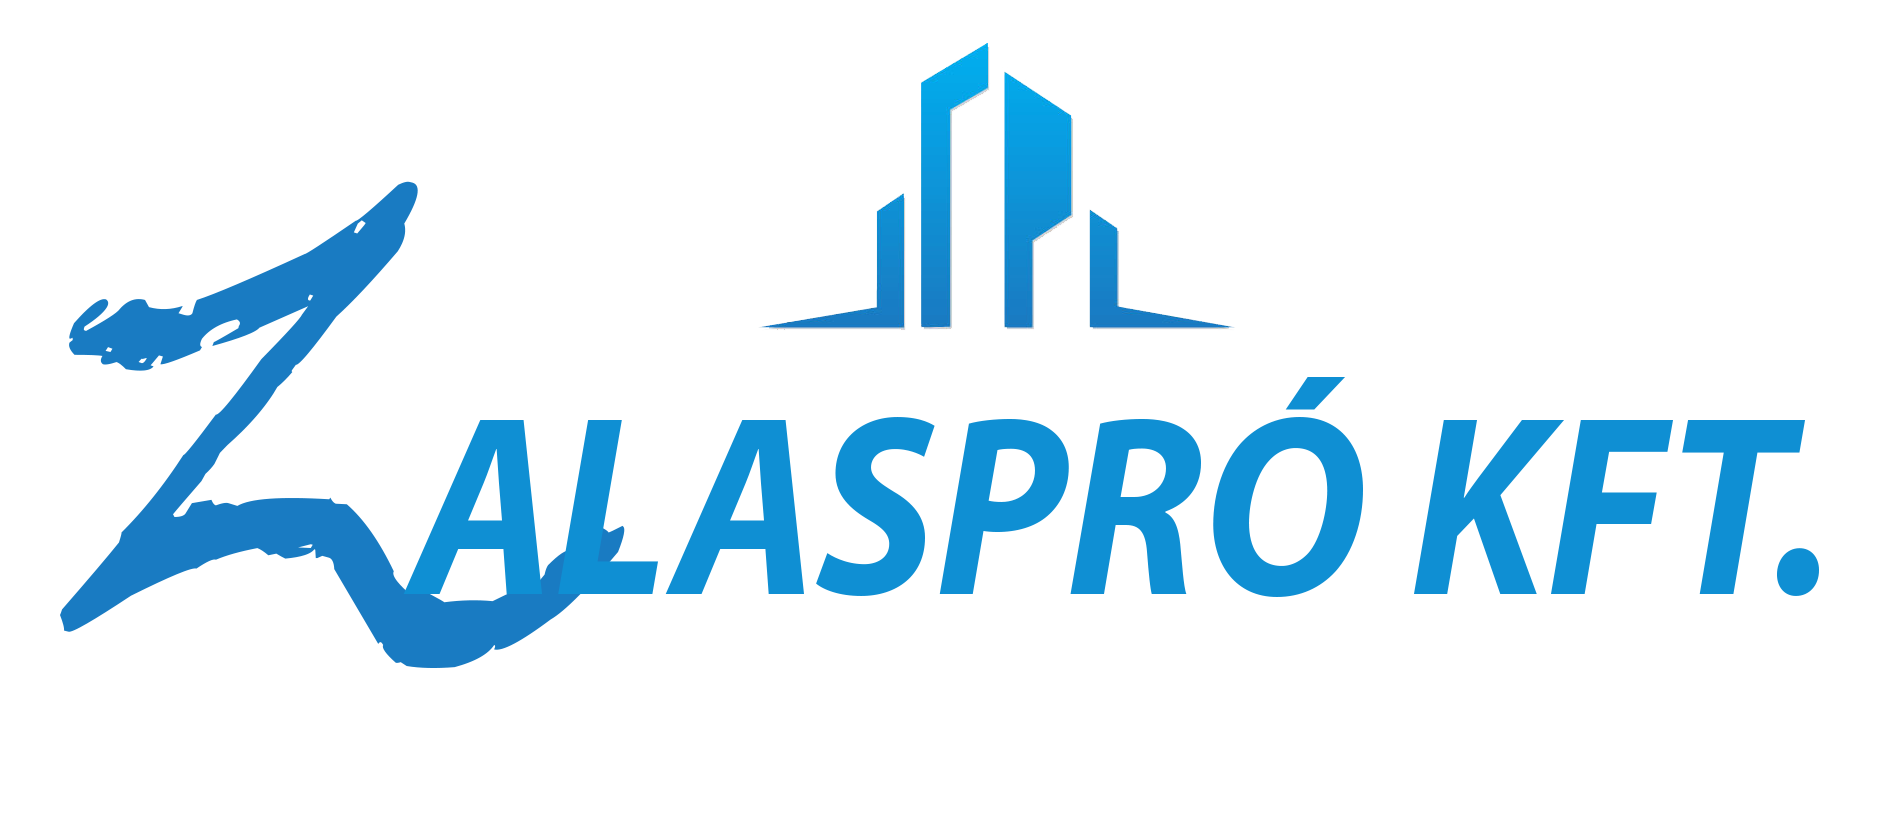 Zaláspro-logo